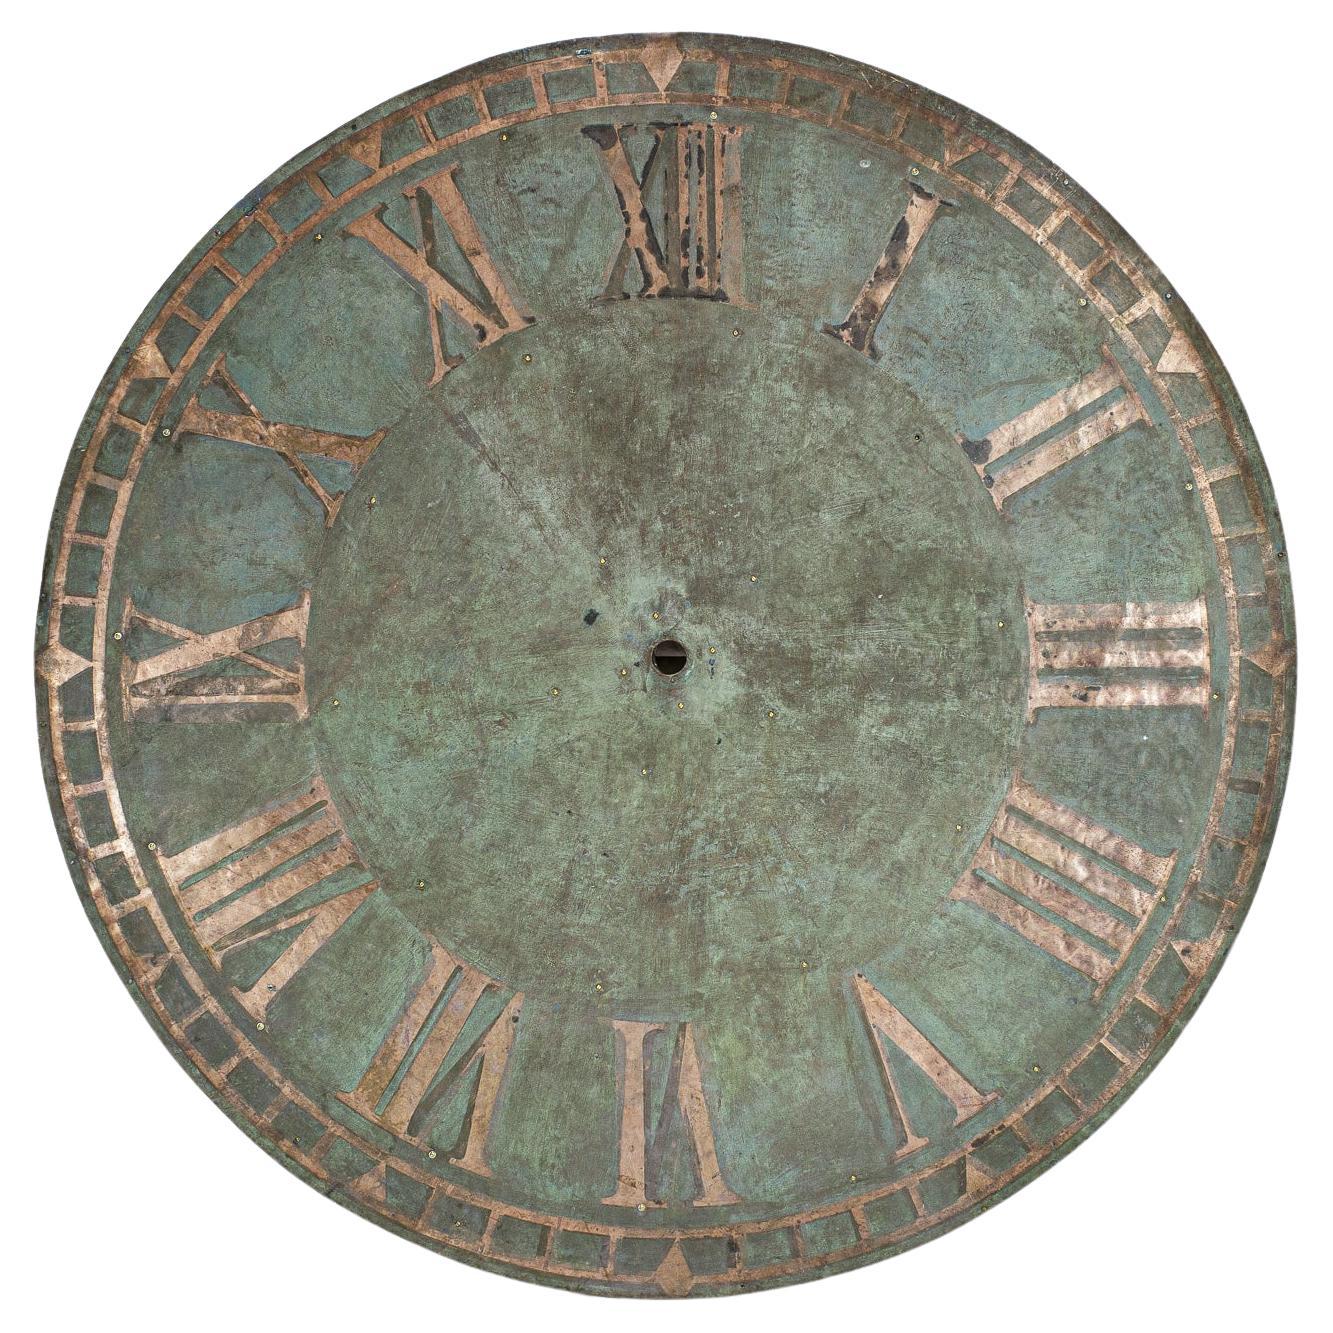 Monumental Verdigris Copper Clock Tower Clock Face